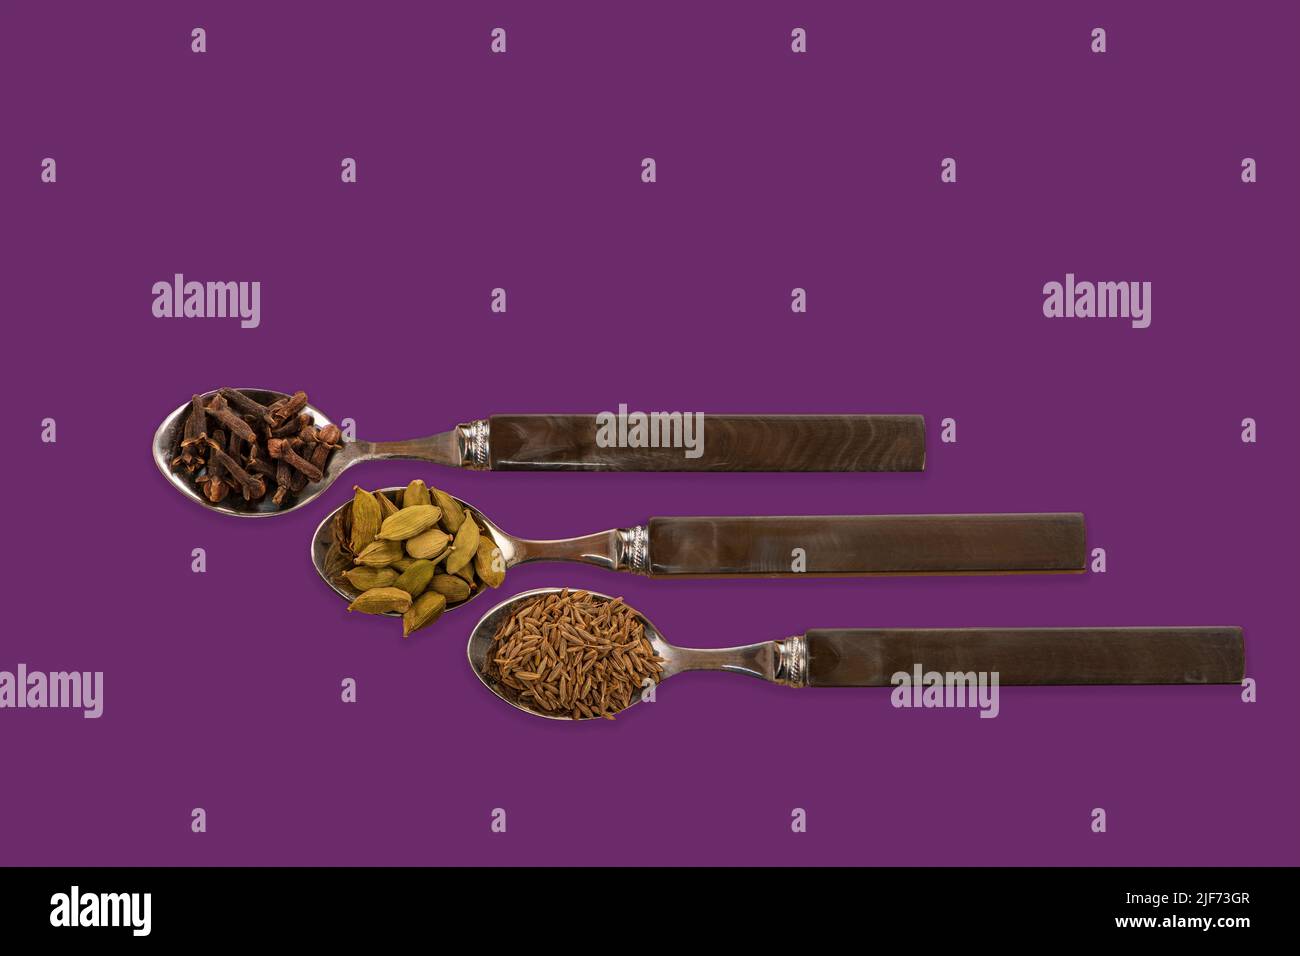 Image de concept avec des cuillères contenant des graines de cumin de clous de girofle et des gousses de cardamon sur un fond violet coloré Banque D'Images